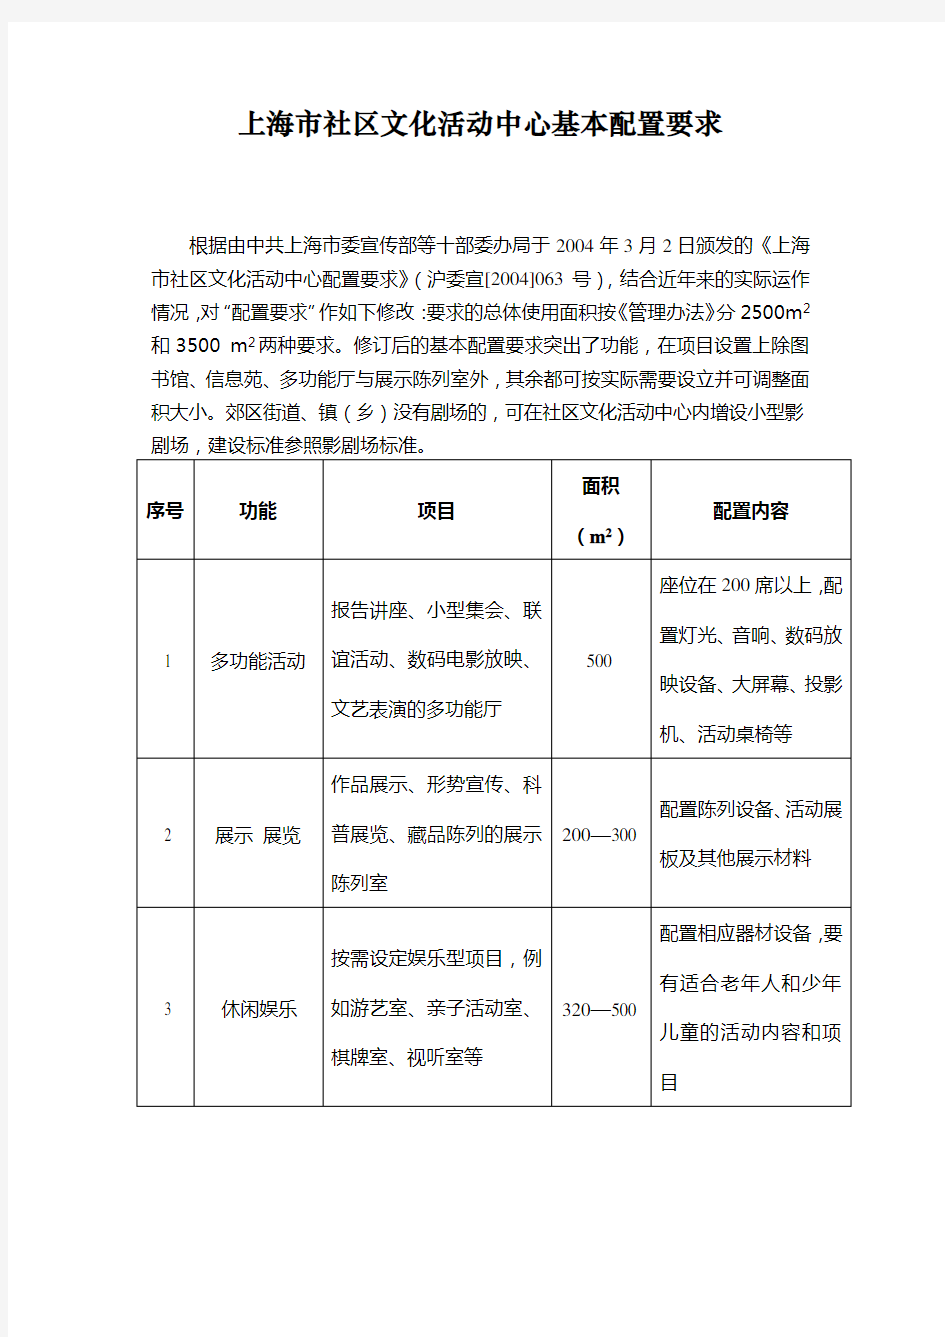 上海市社区文化活动中心基本配置要求